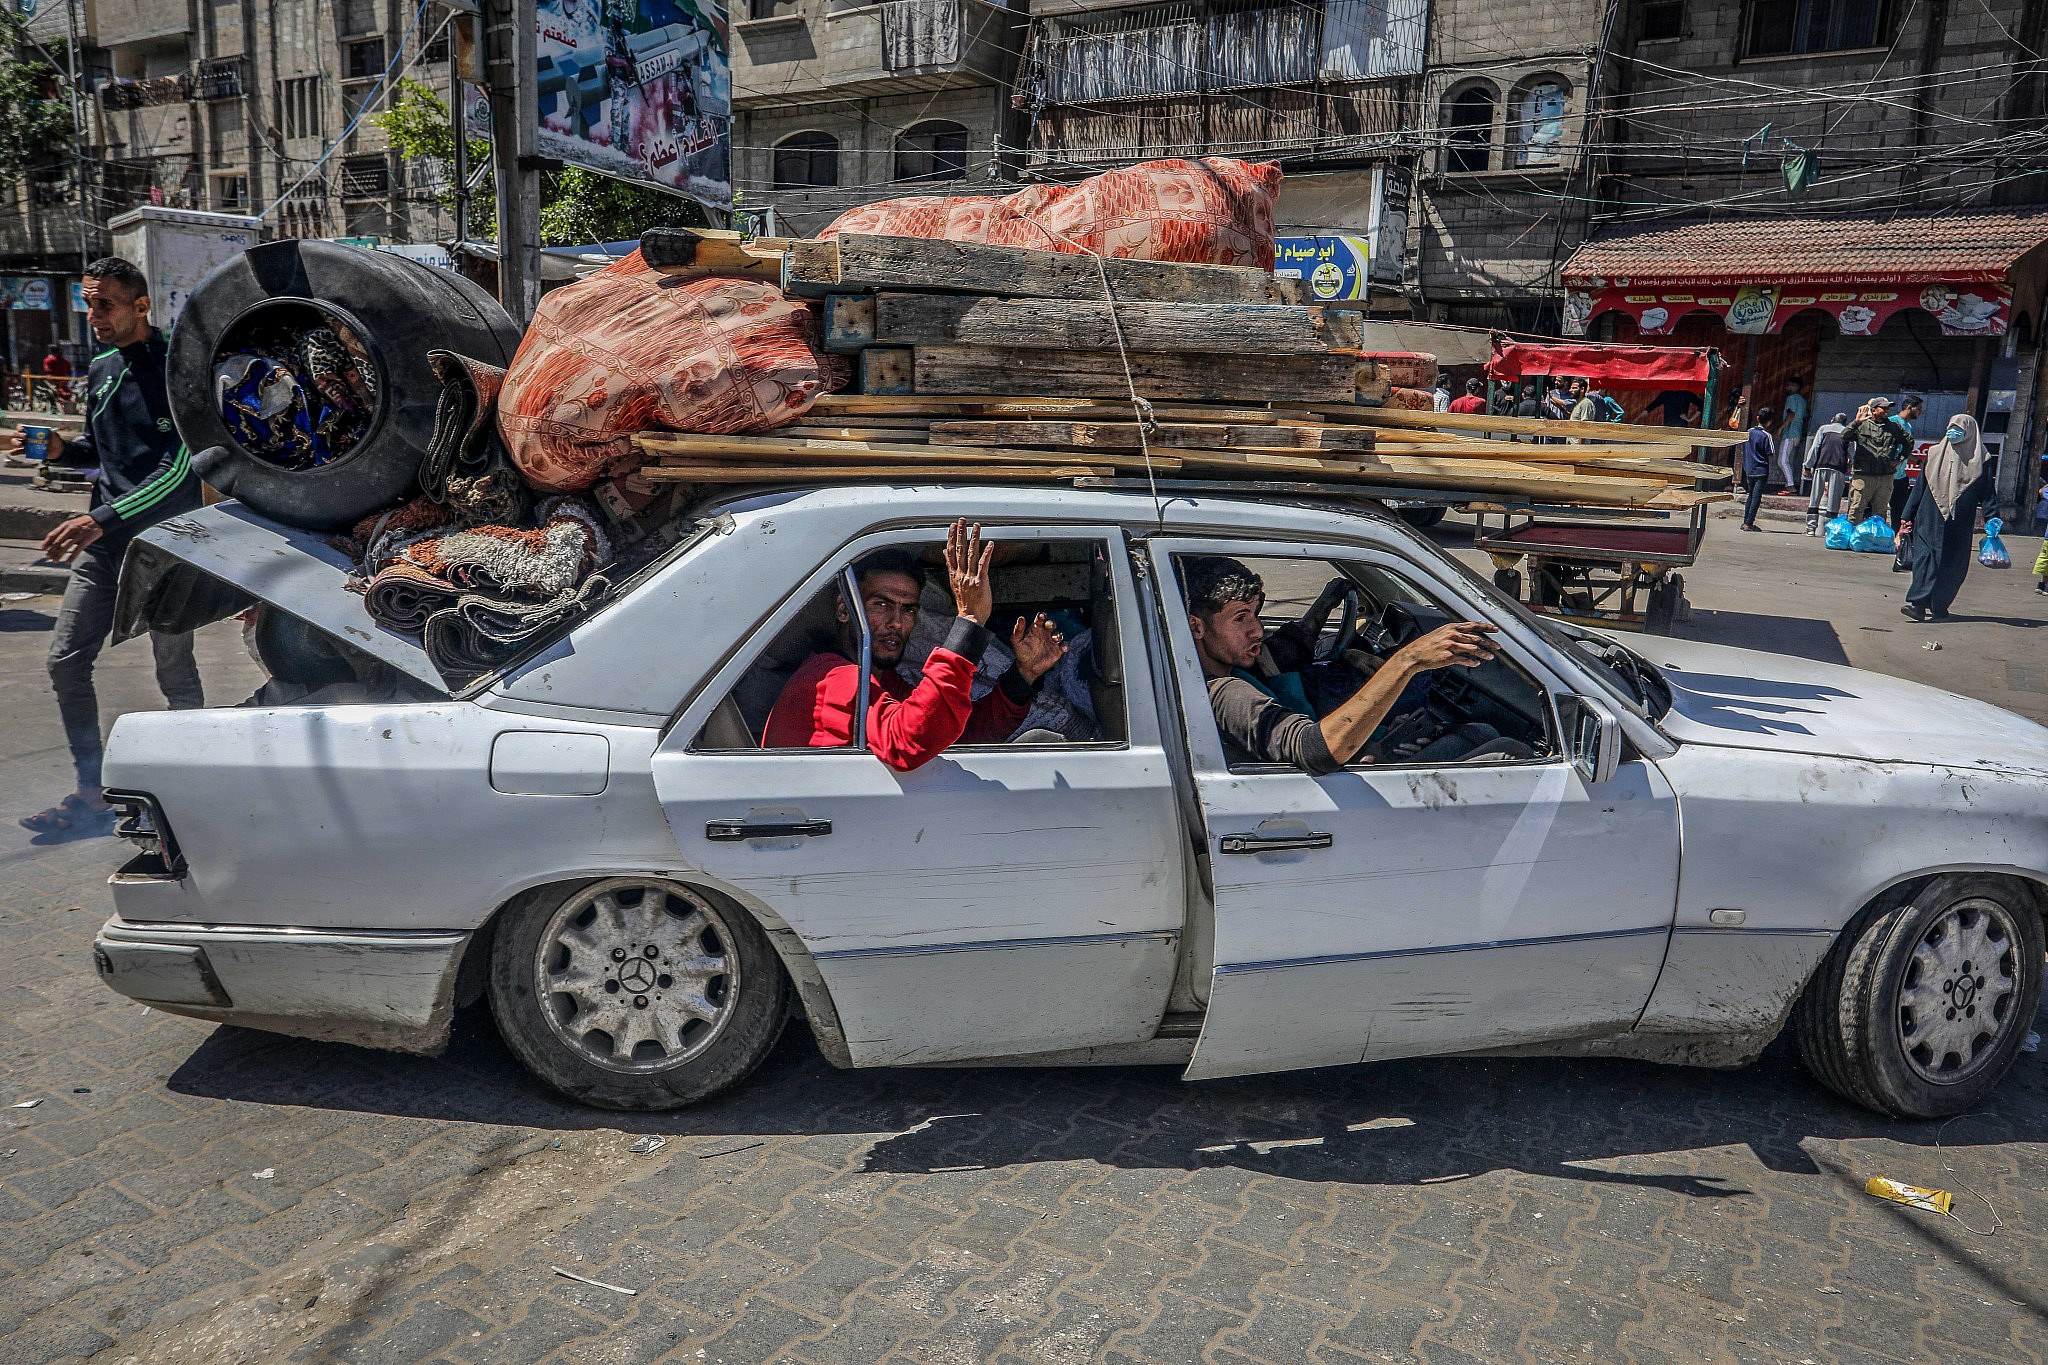 "הרחובות היו עמוסים, כולם ברחו". פלסטינים נמלטים מאזור הקרבות ברפיח (צילום: עבד רחים ח'טיב / פלאש 90)